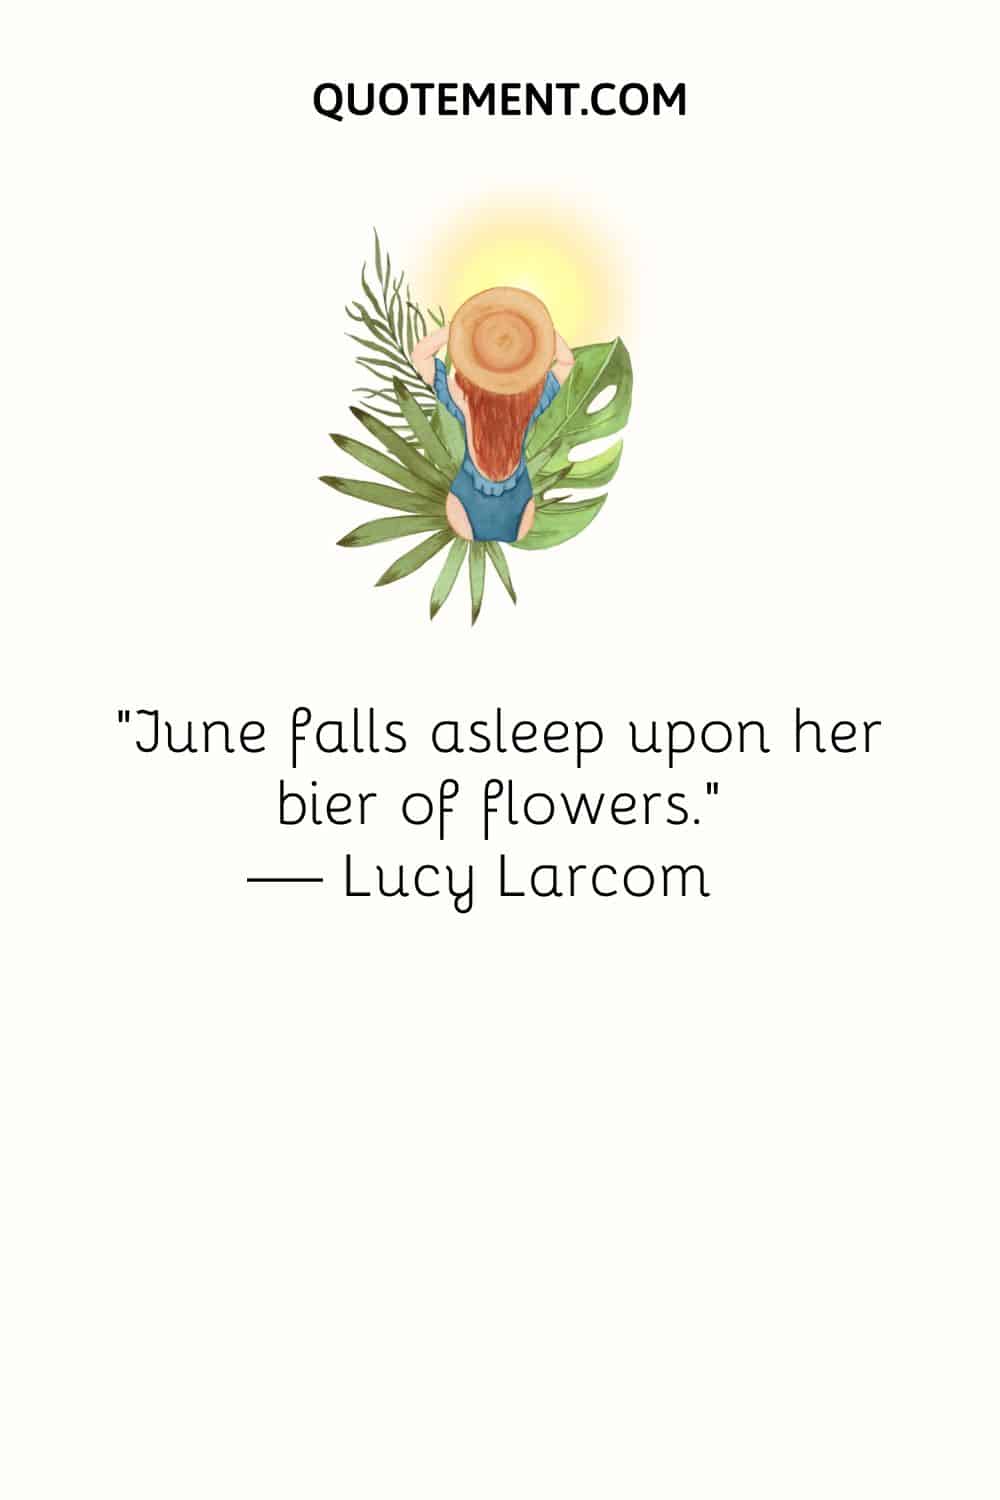 "June se duerme sobre su féretro de flores". - Lucy Larcom